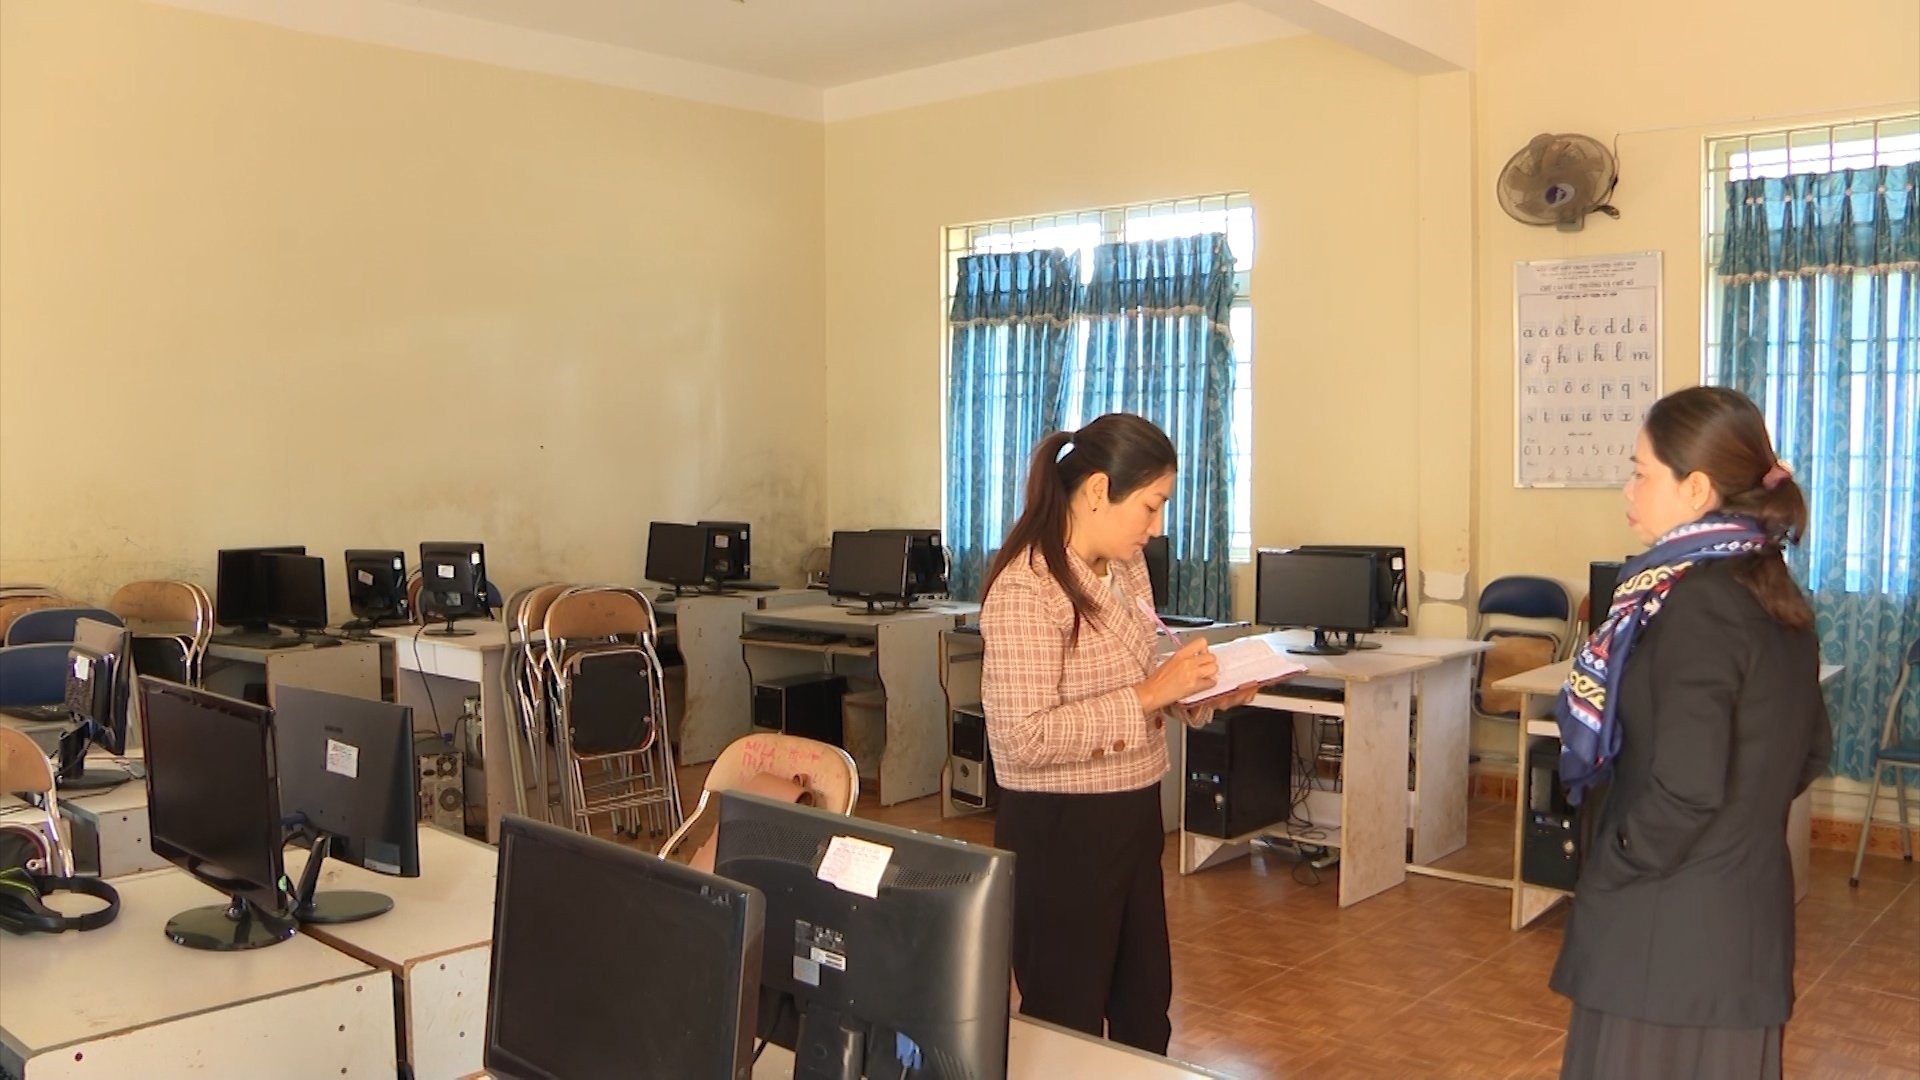 Nhiều trường học ở Đắk Nông ngoài thiếu giáo viên còn thiếu cả máy tính, trang thiết bị phục vụ dạy bộ môn tin học. Ảnh: Phan Tuấn